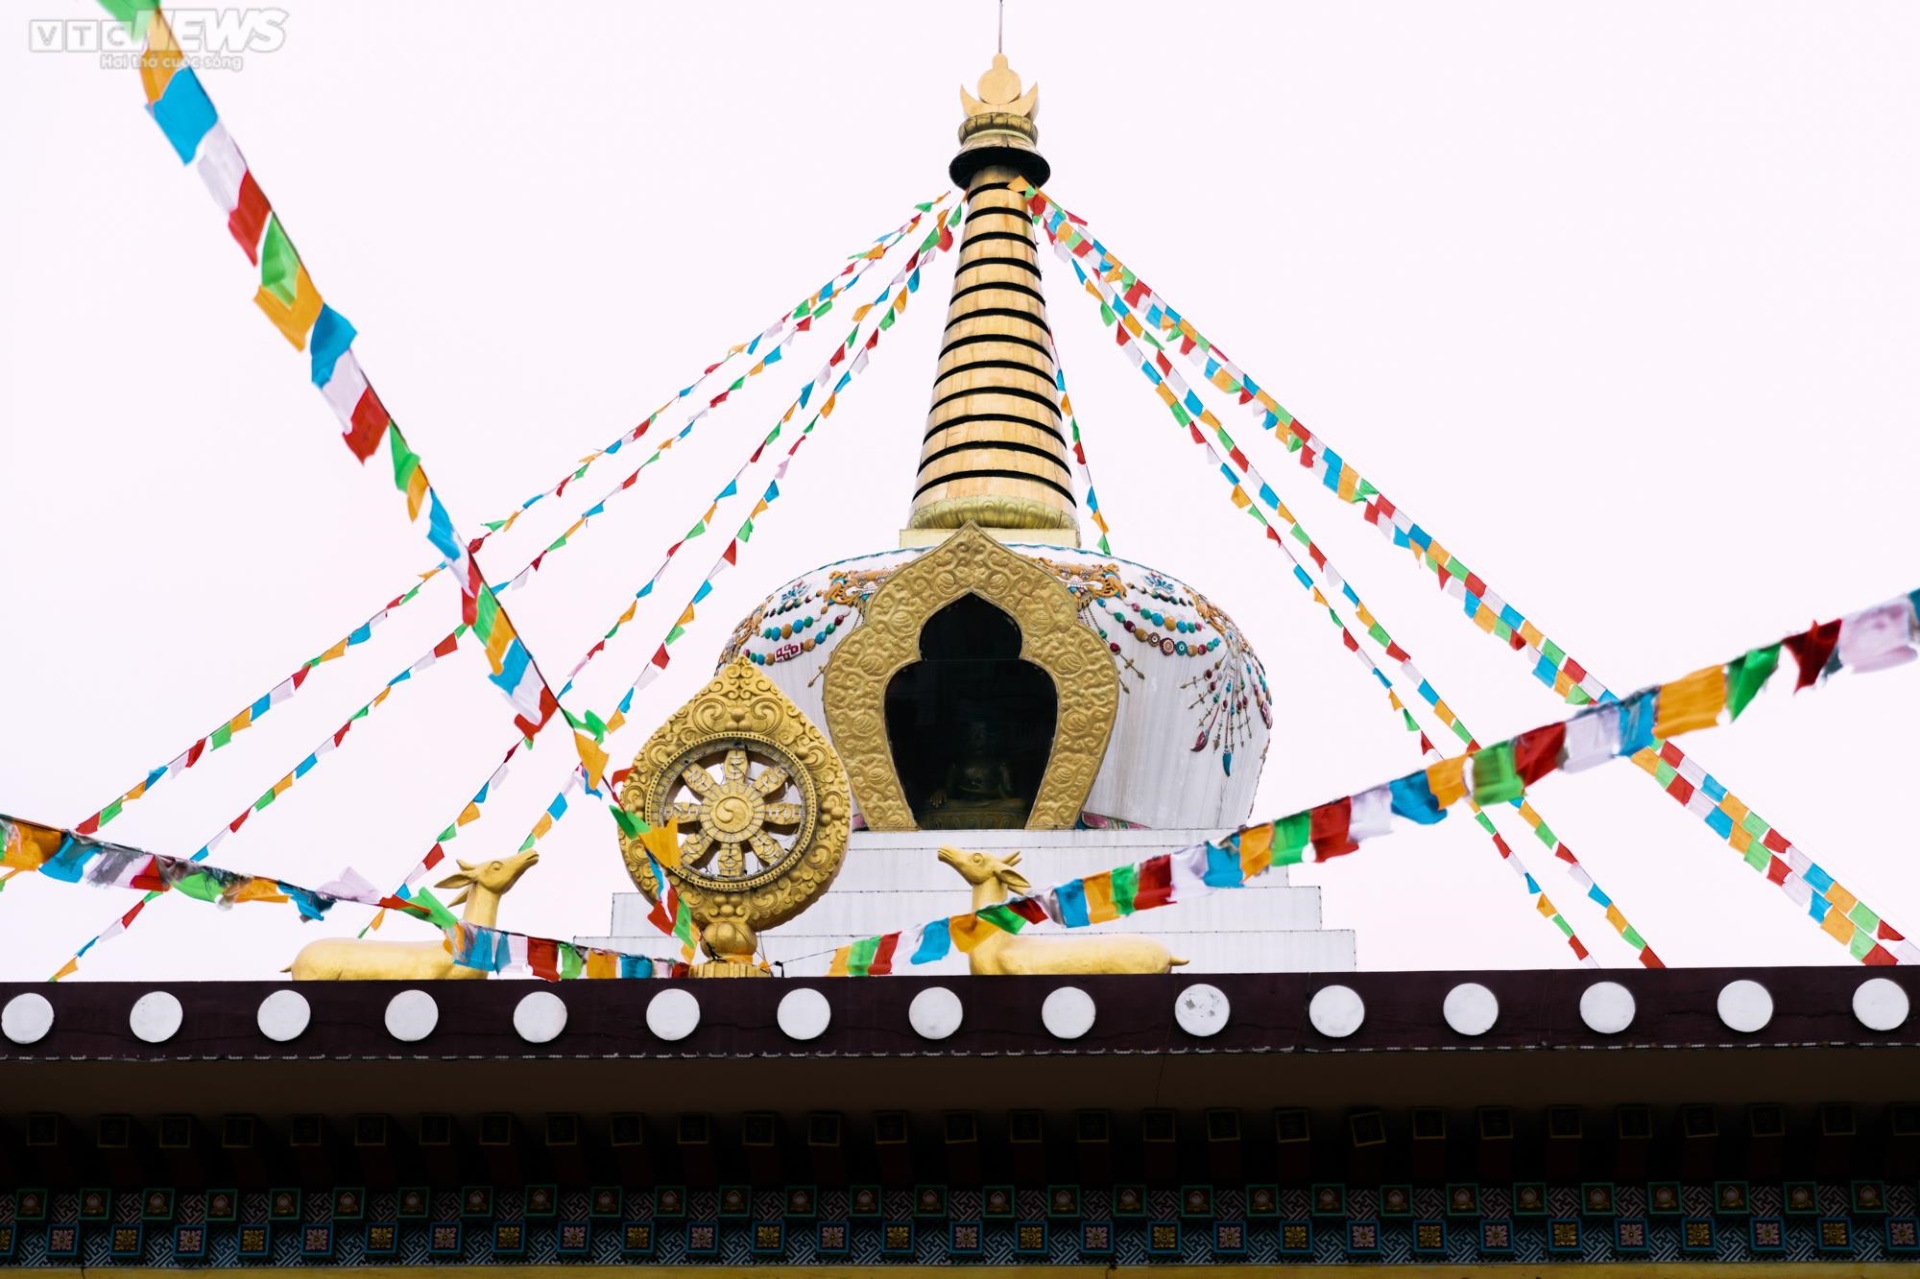 Chiêm ngưỡng ngôi chùa Tây Tạng 600 năm tuổi độc nhất tại Hà Nội - Ảnh 5.